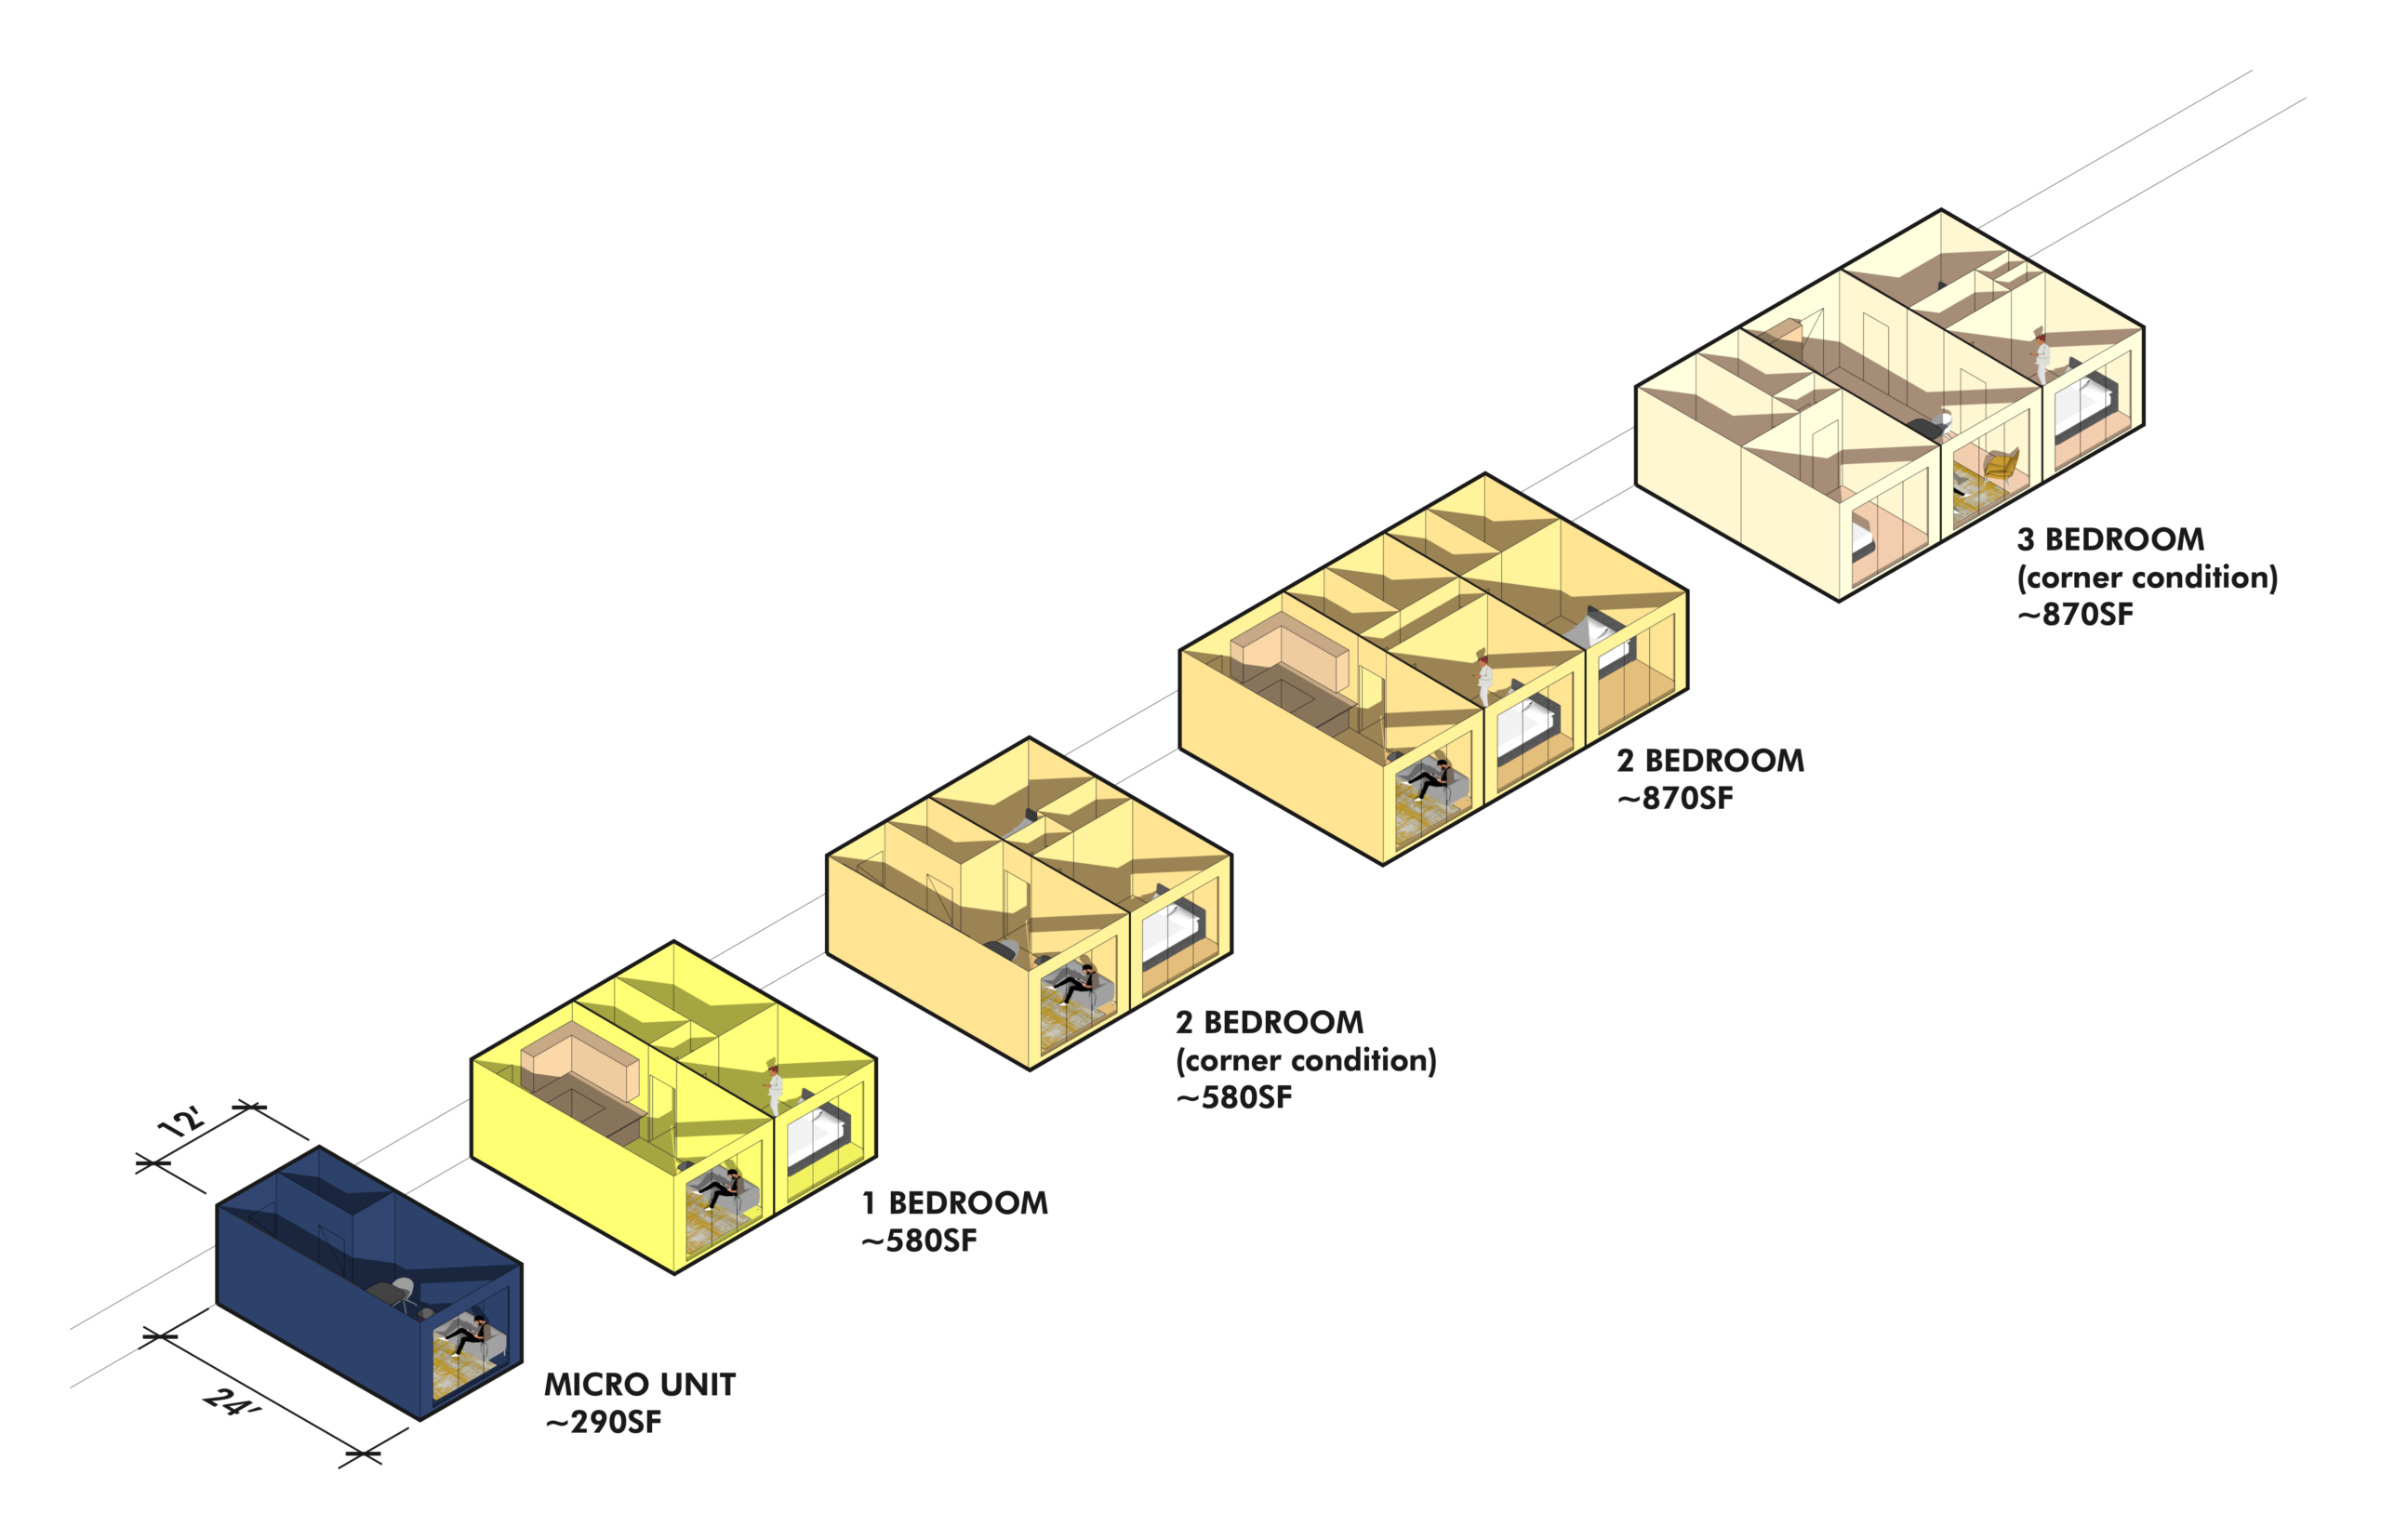 主要和科尔多瓦建筑适应性模块化单元